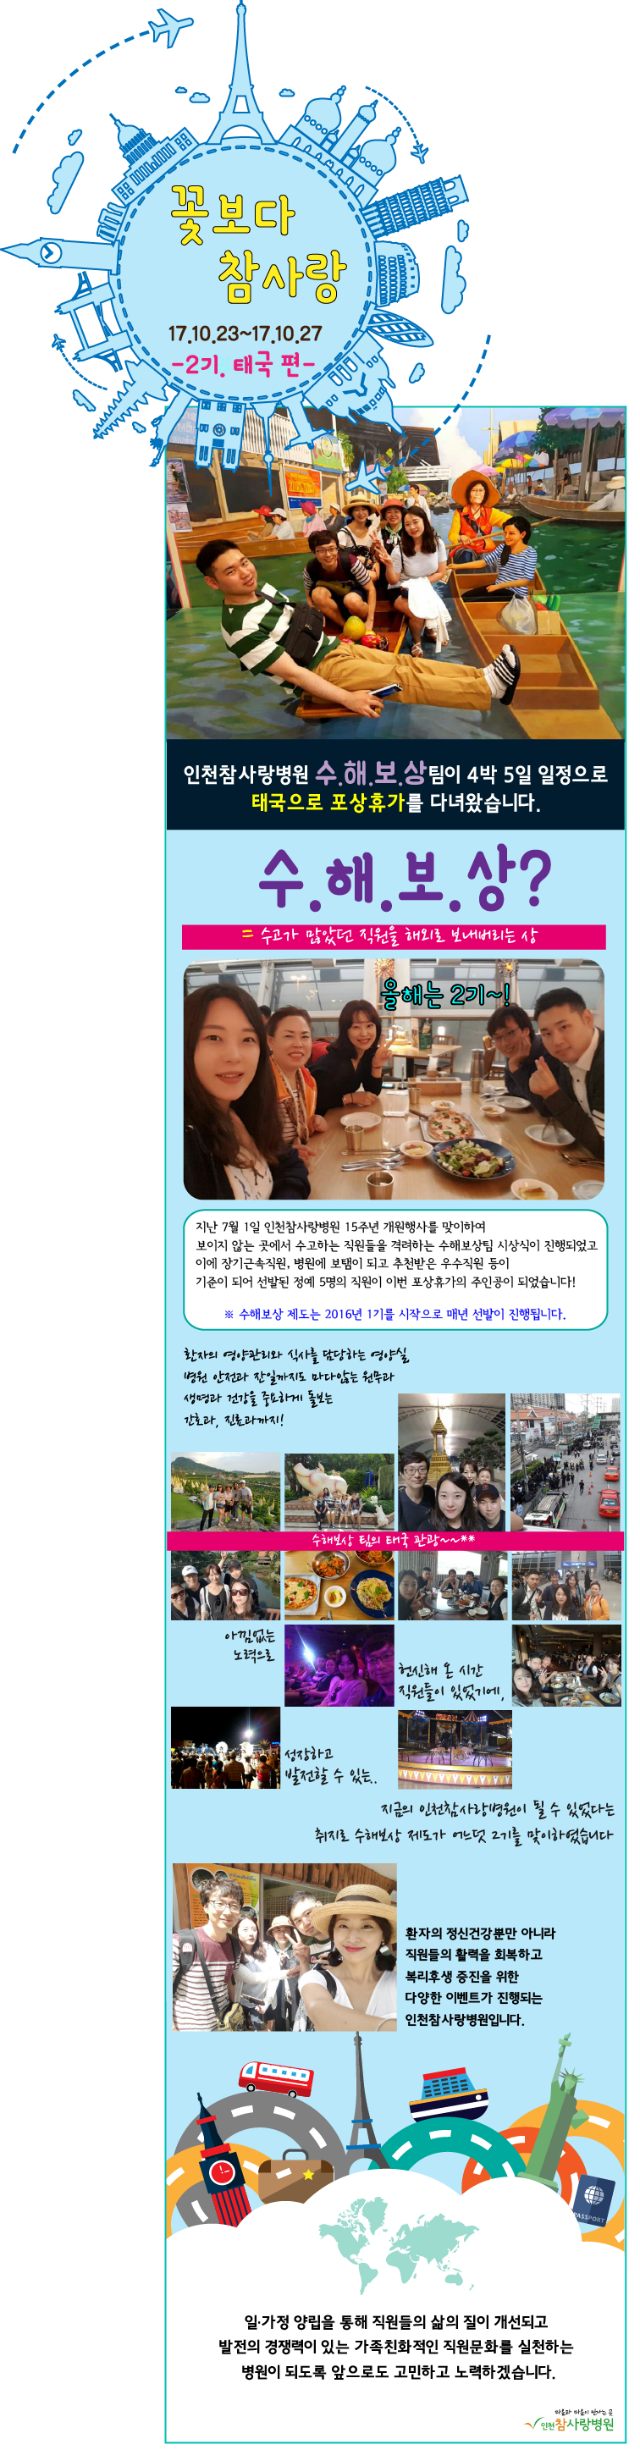 사본 -2017참사랑소식 11월-수해보상(태국).png